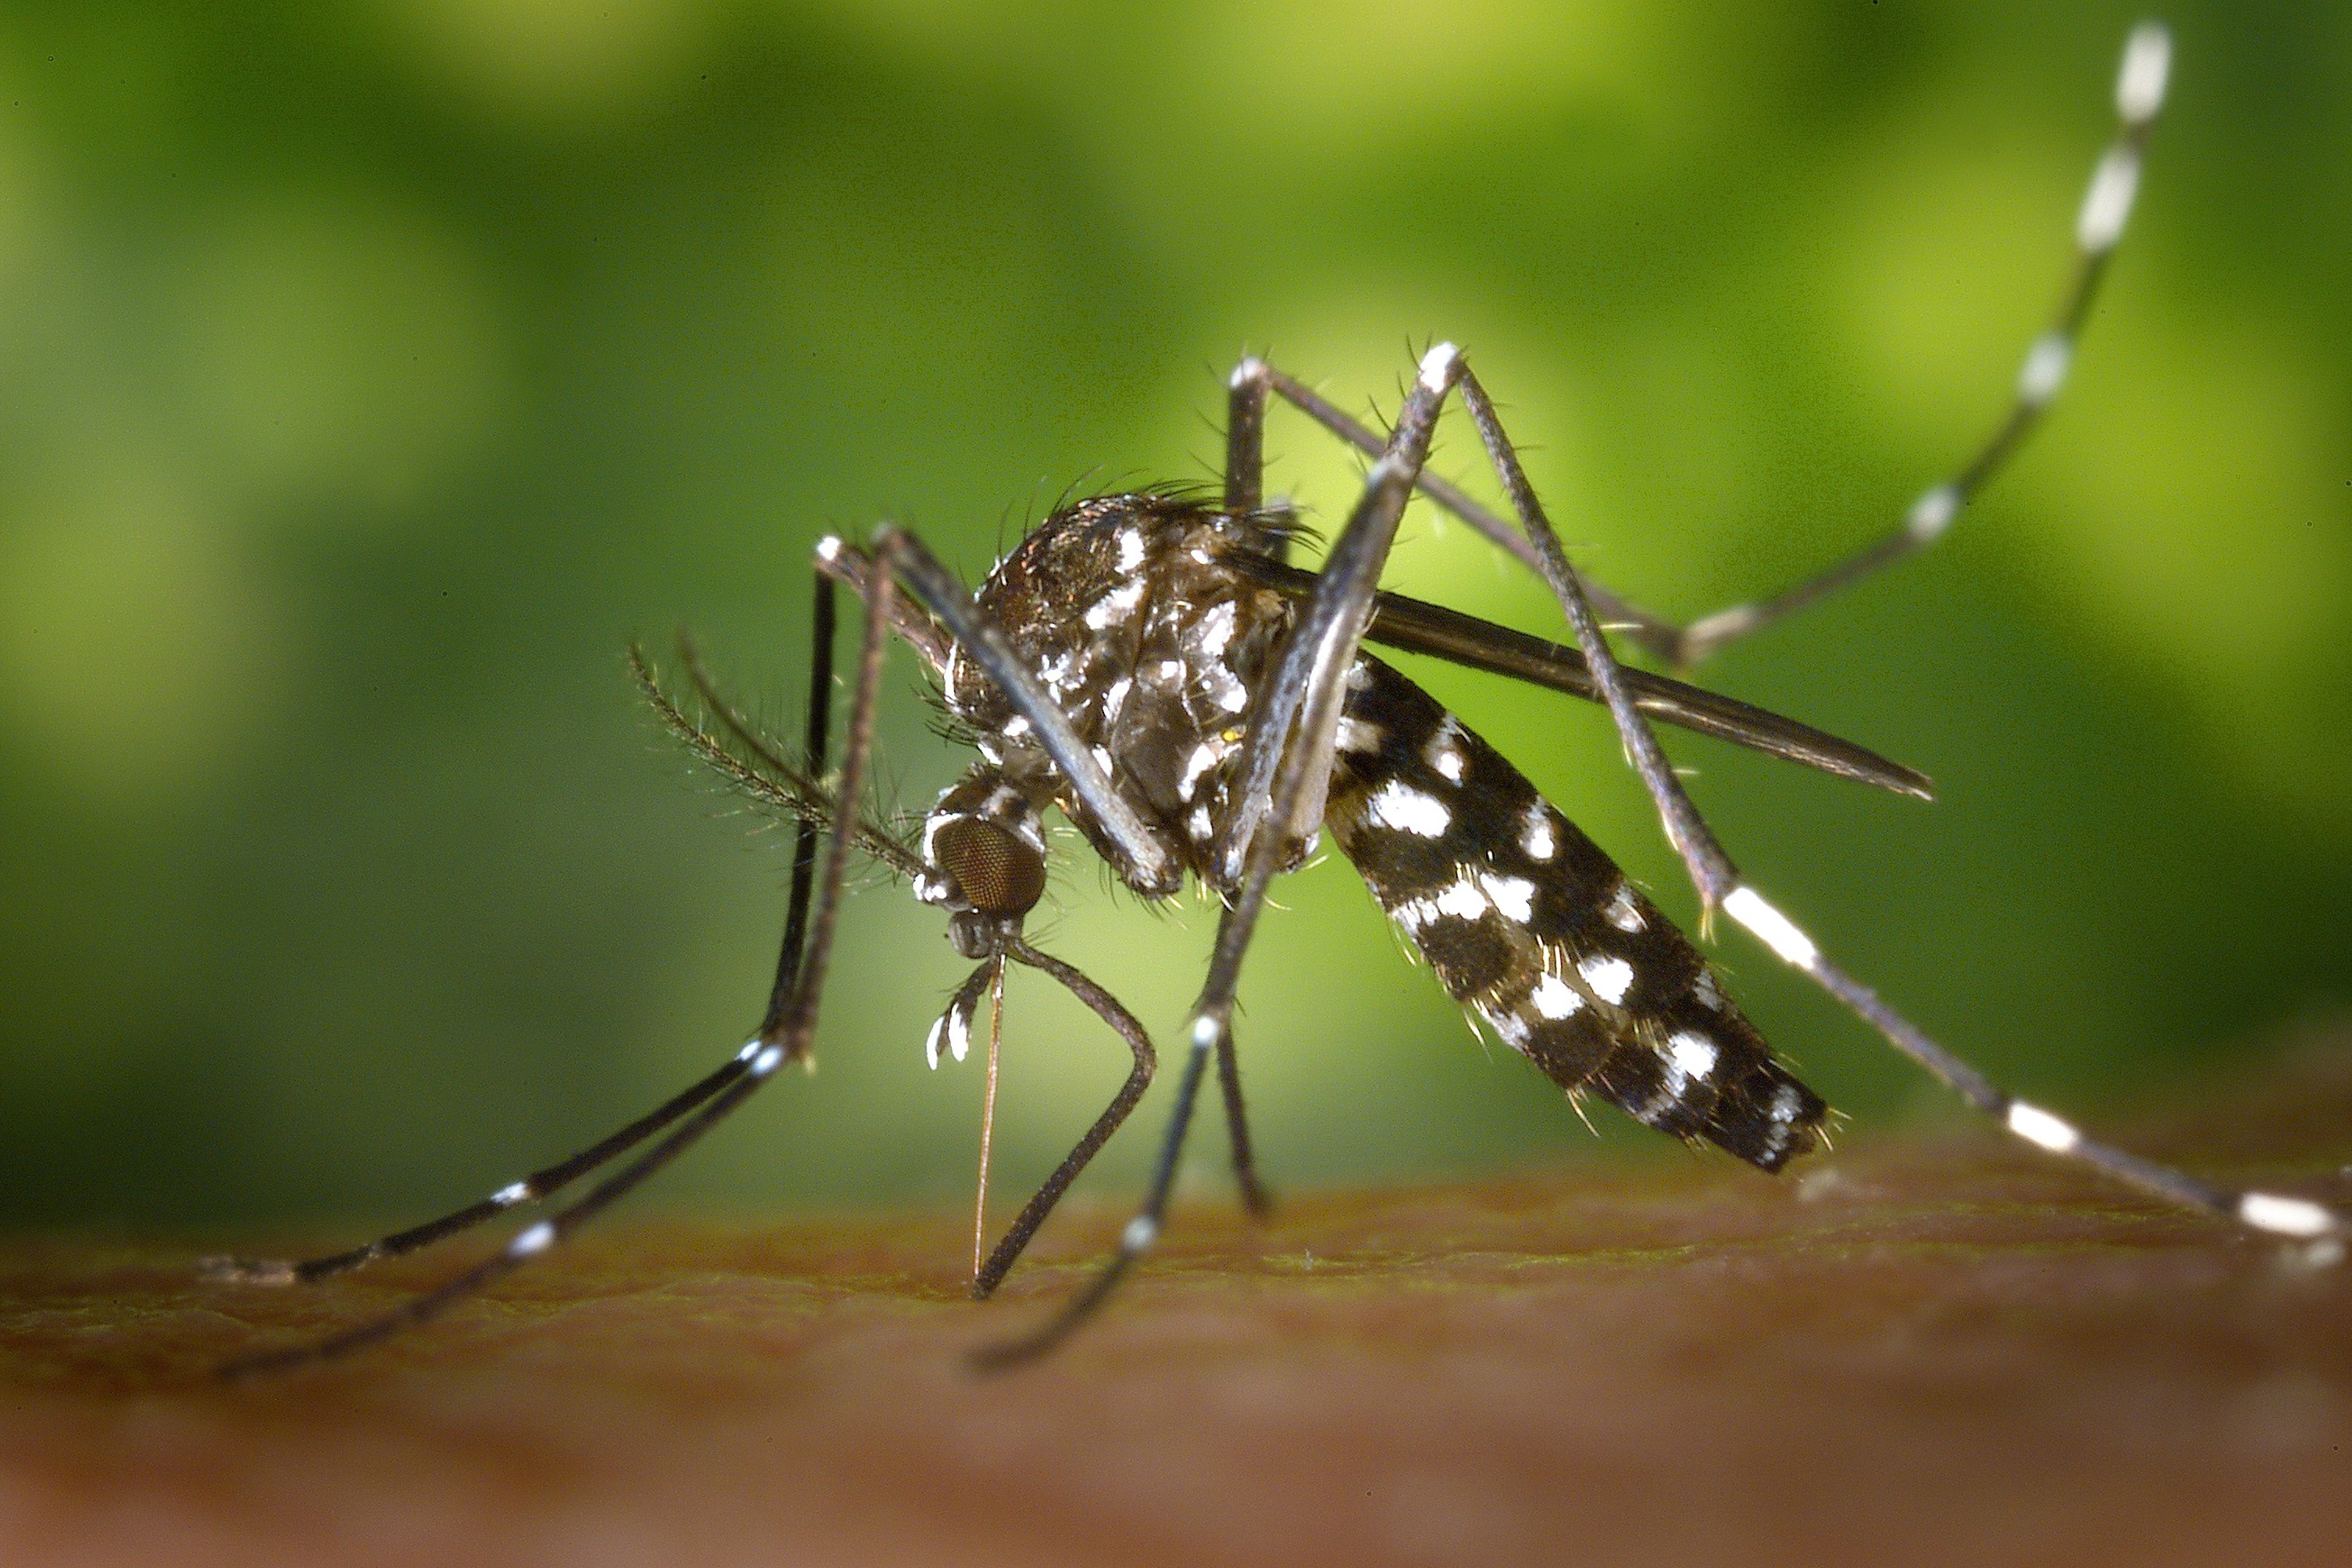 Bilimsel adı Aedes albopictus olan bir sivrisinek türü kan emerken